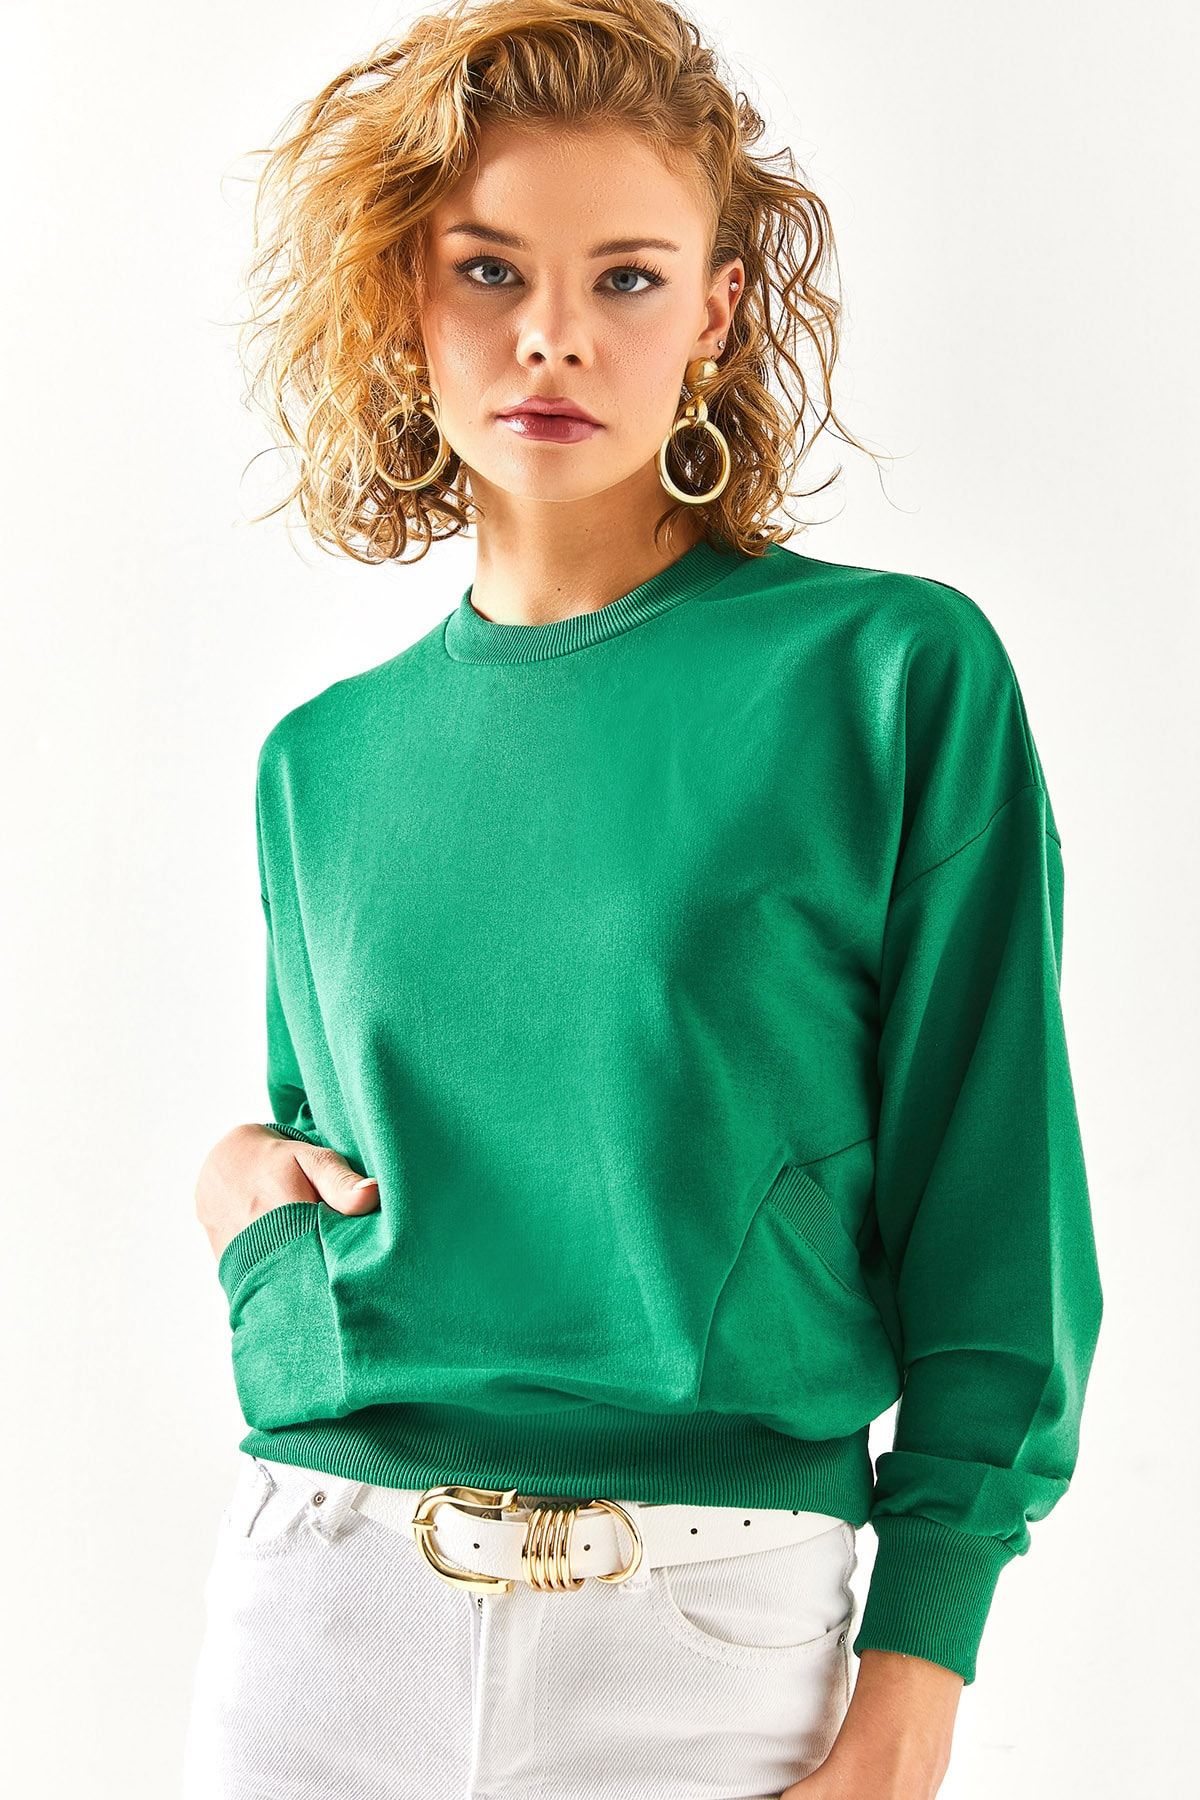 Olalook Kadın Zümrüt Yeşili Cep Detaylı Yumuşak Dokulu Sweatshirt SWT-19000616